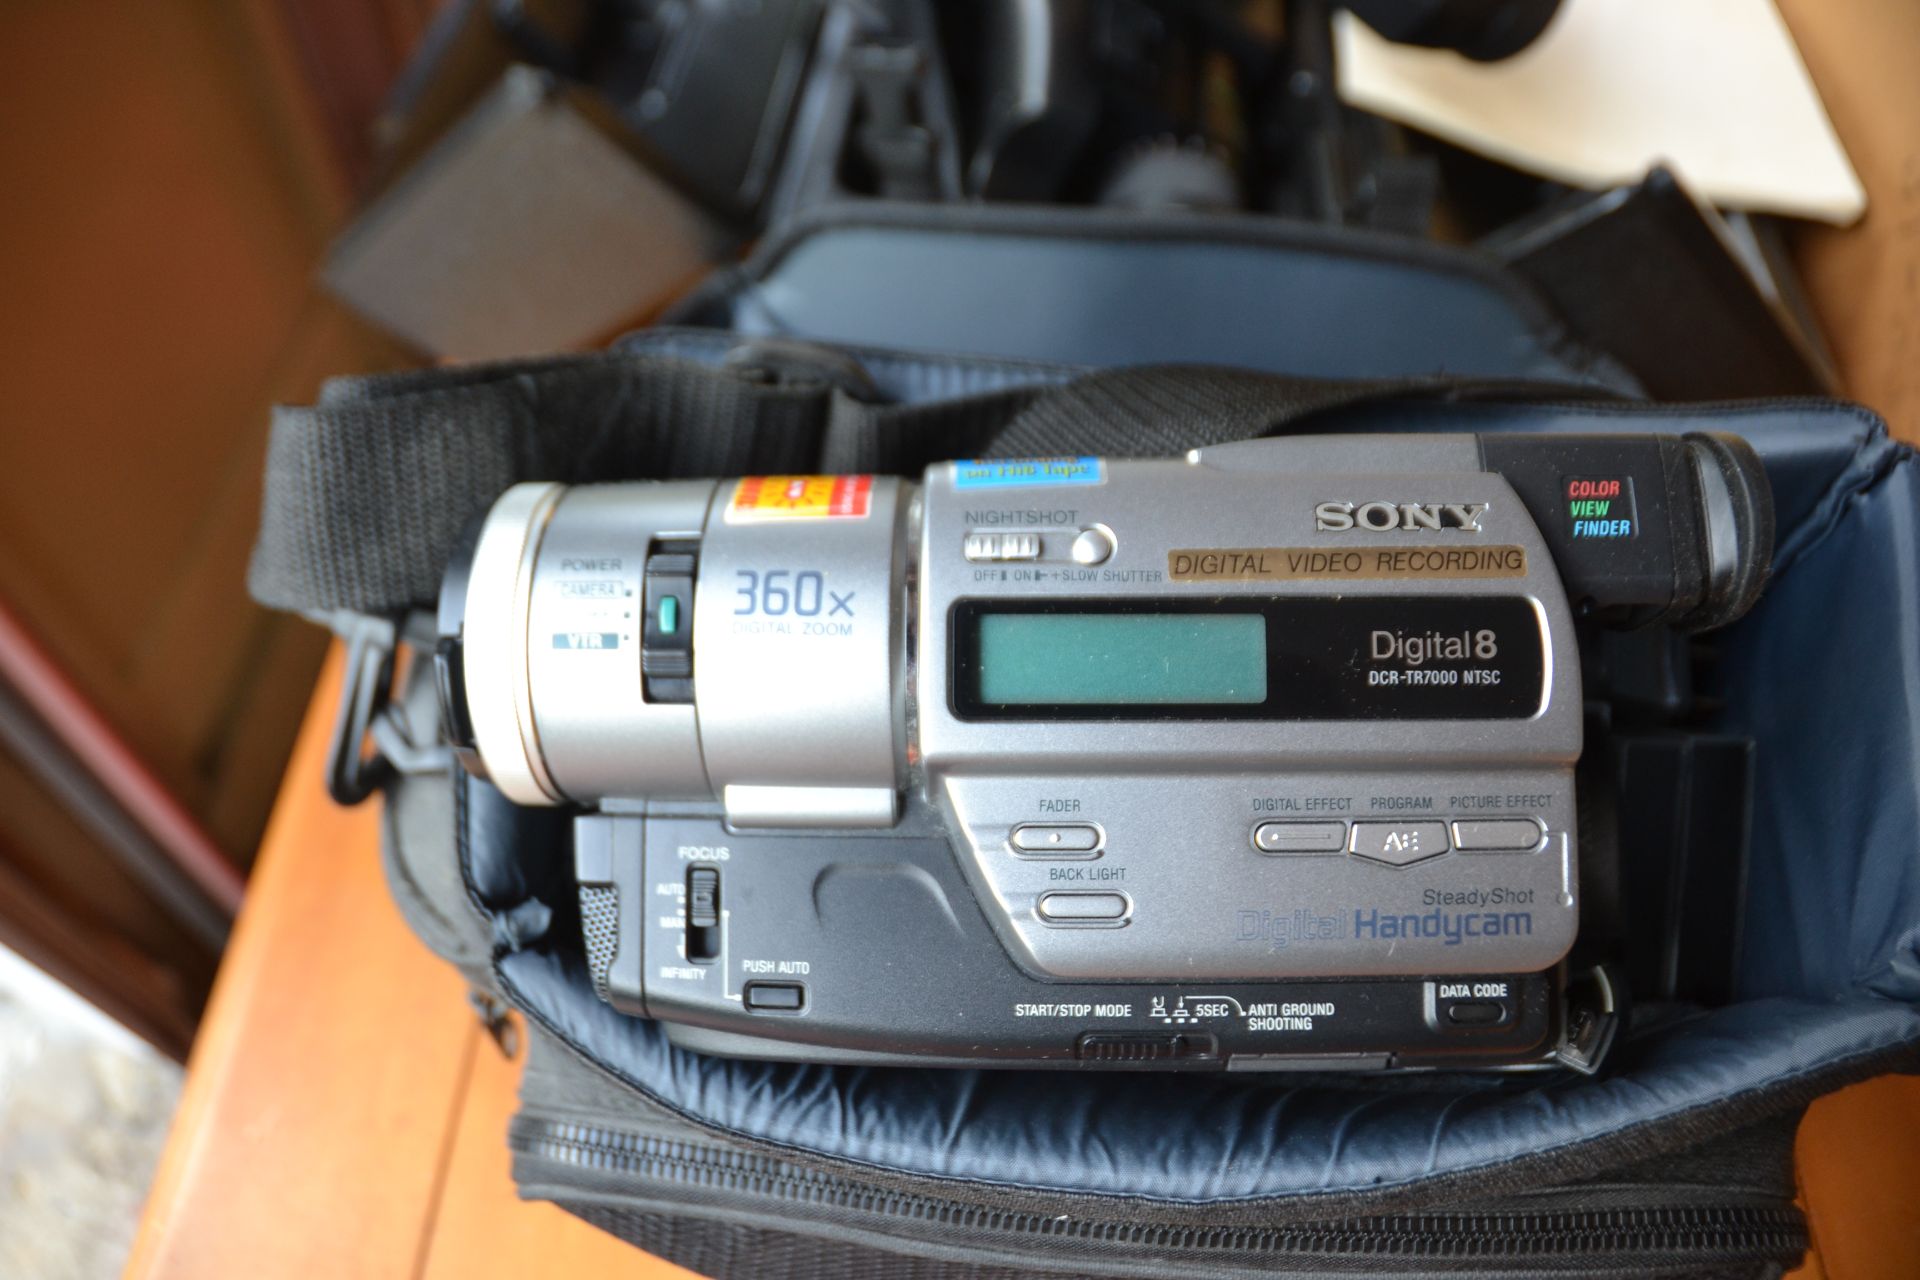 Video Cameras - (Sony Handycam Digital 8, Sony HVC-2200, VHS Movie Camera - Image 2 of 4